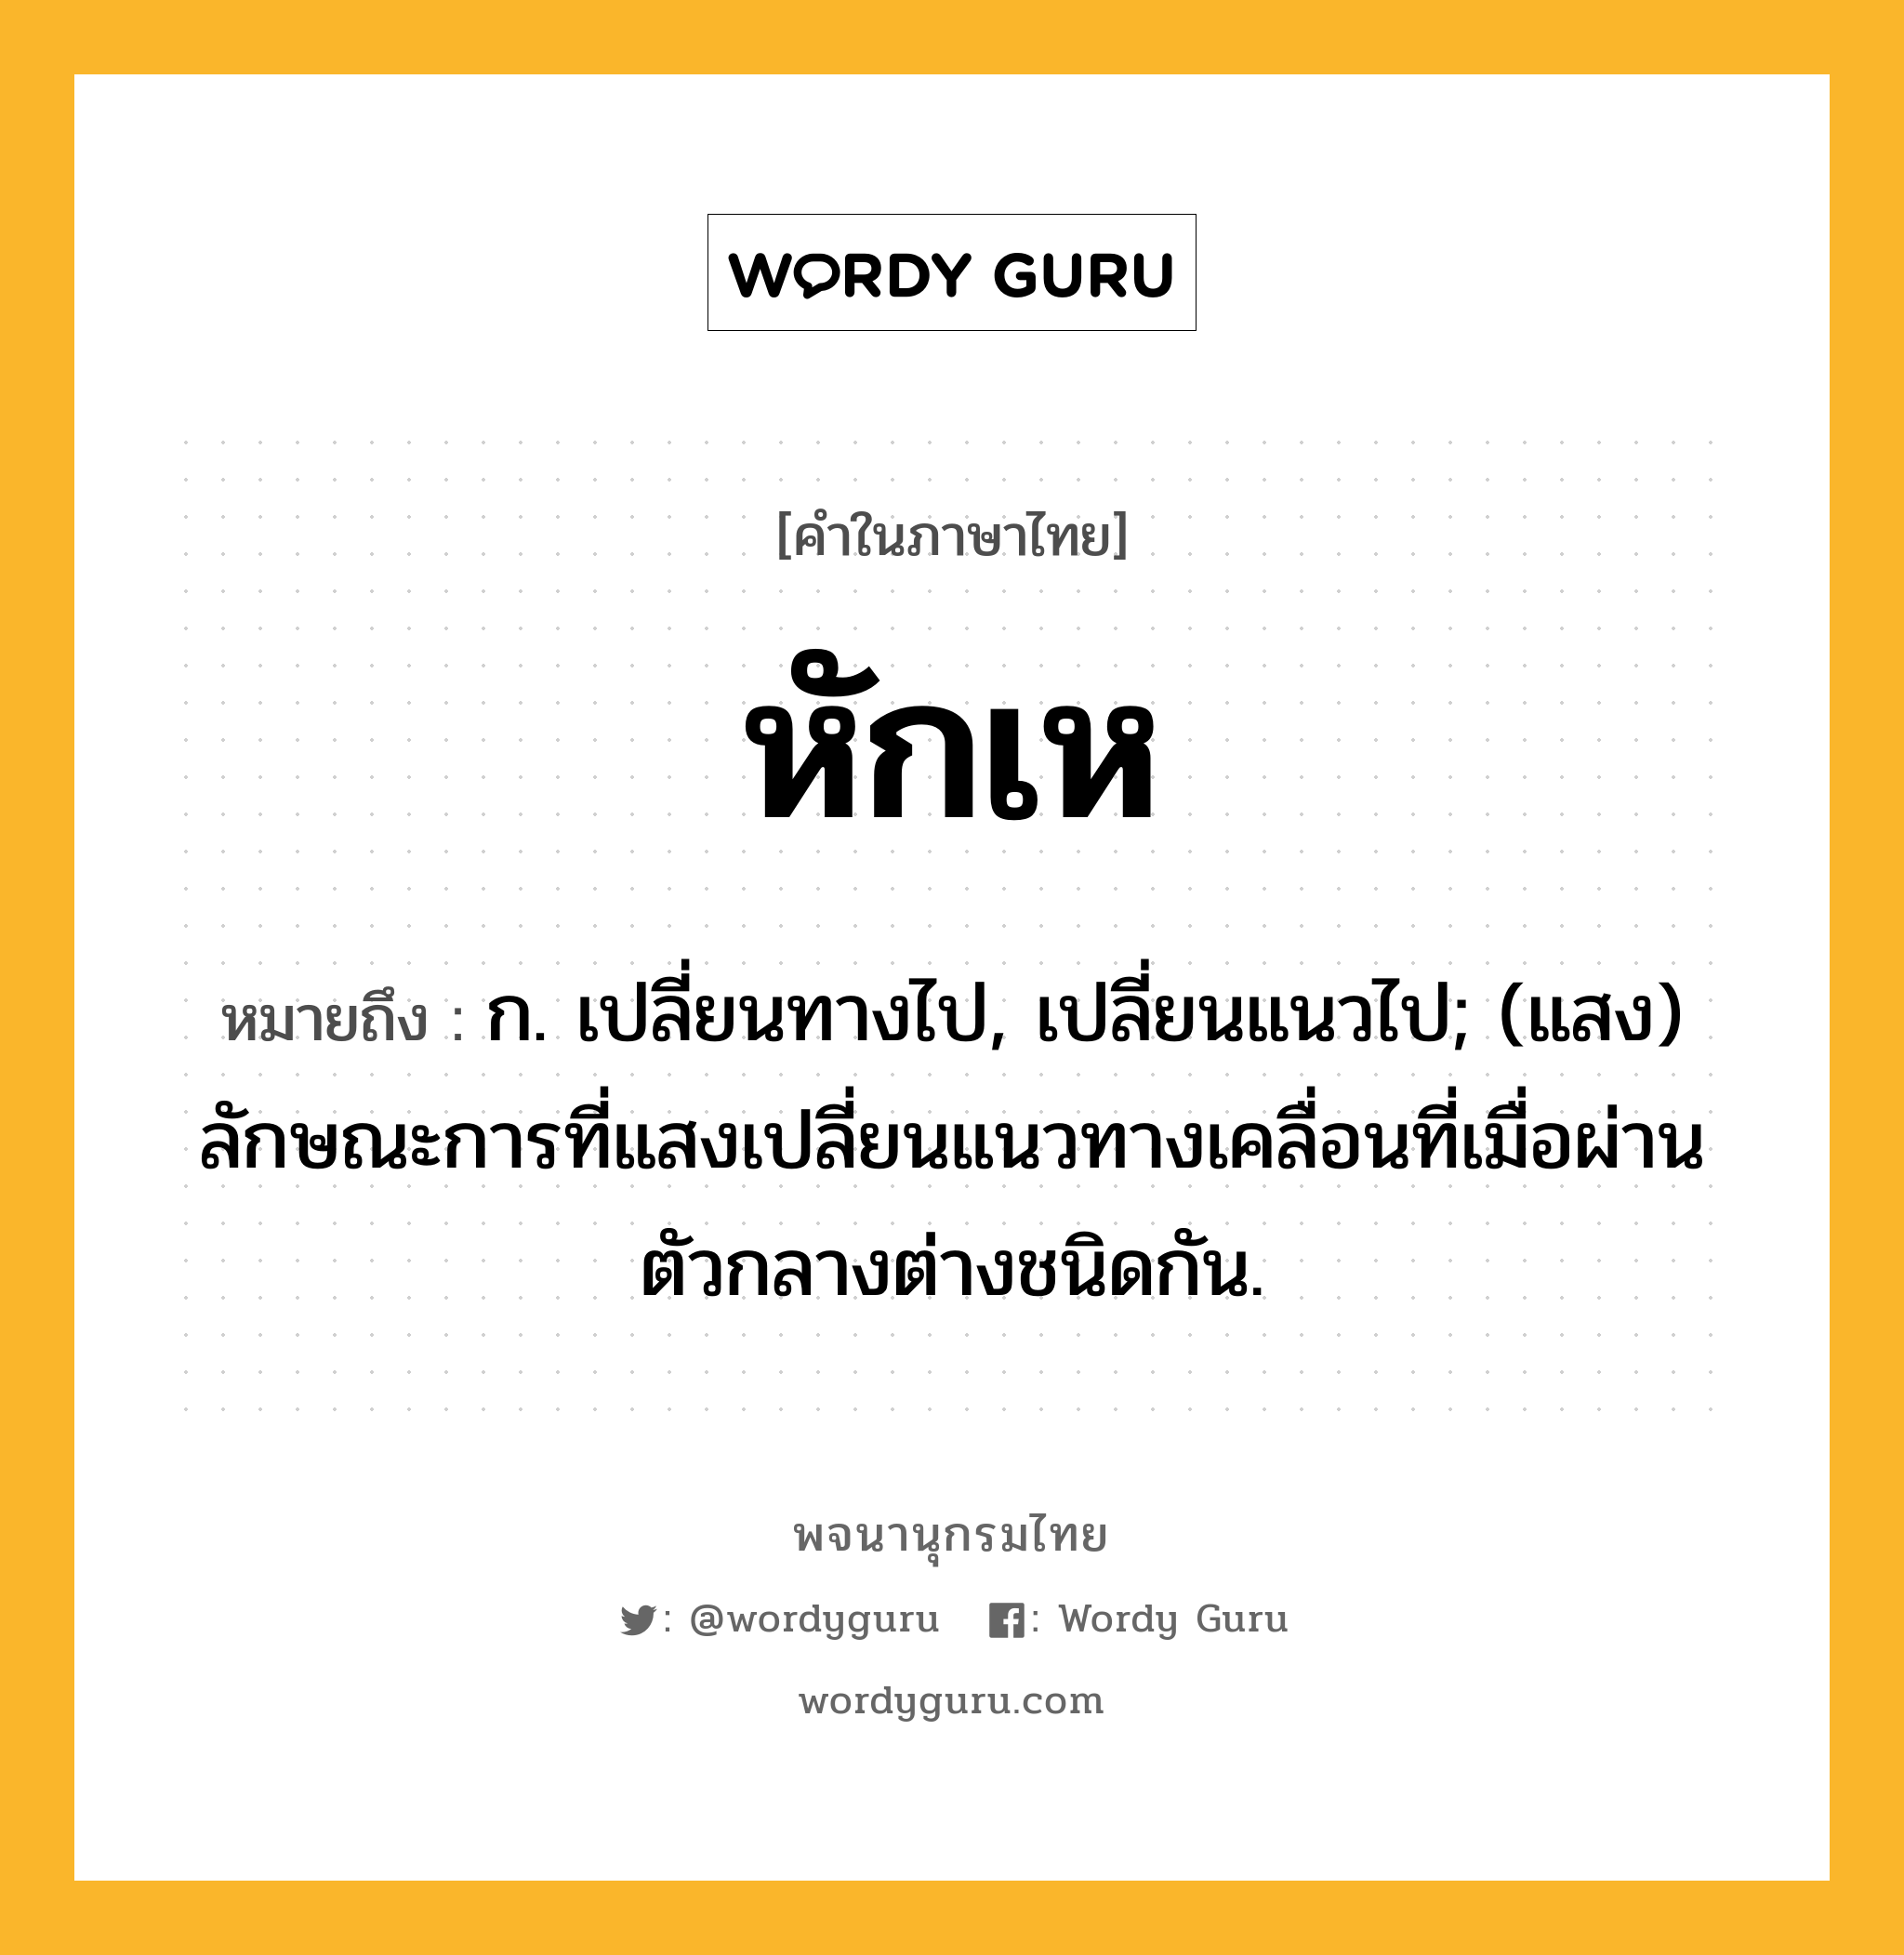 หักเห หมายถึงอะไร?, คำในภาษาไทย หักเห หมายถึง ก. เปลี่ยนทางไป, เปลี่ยนแนวไป; (แสง) ลักษณะการที่แสงเปลี่ยนแนวทางเคลื่อนที่เมื่อผ่านตัวกลางต่างชนิดกัน.